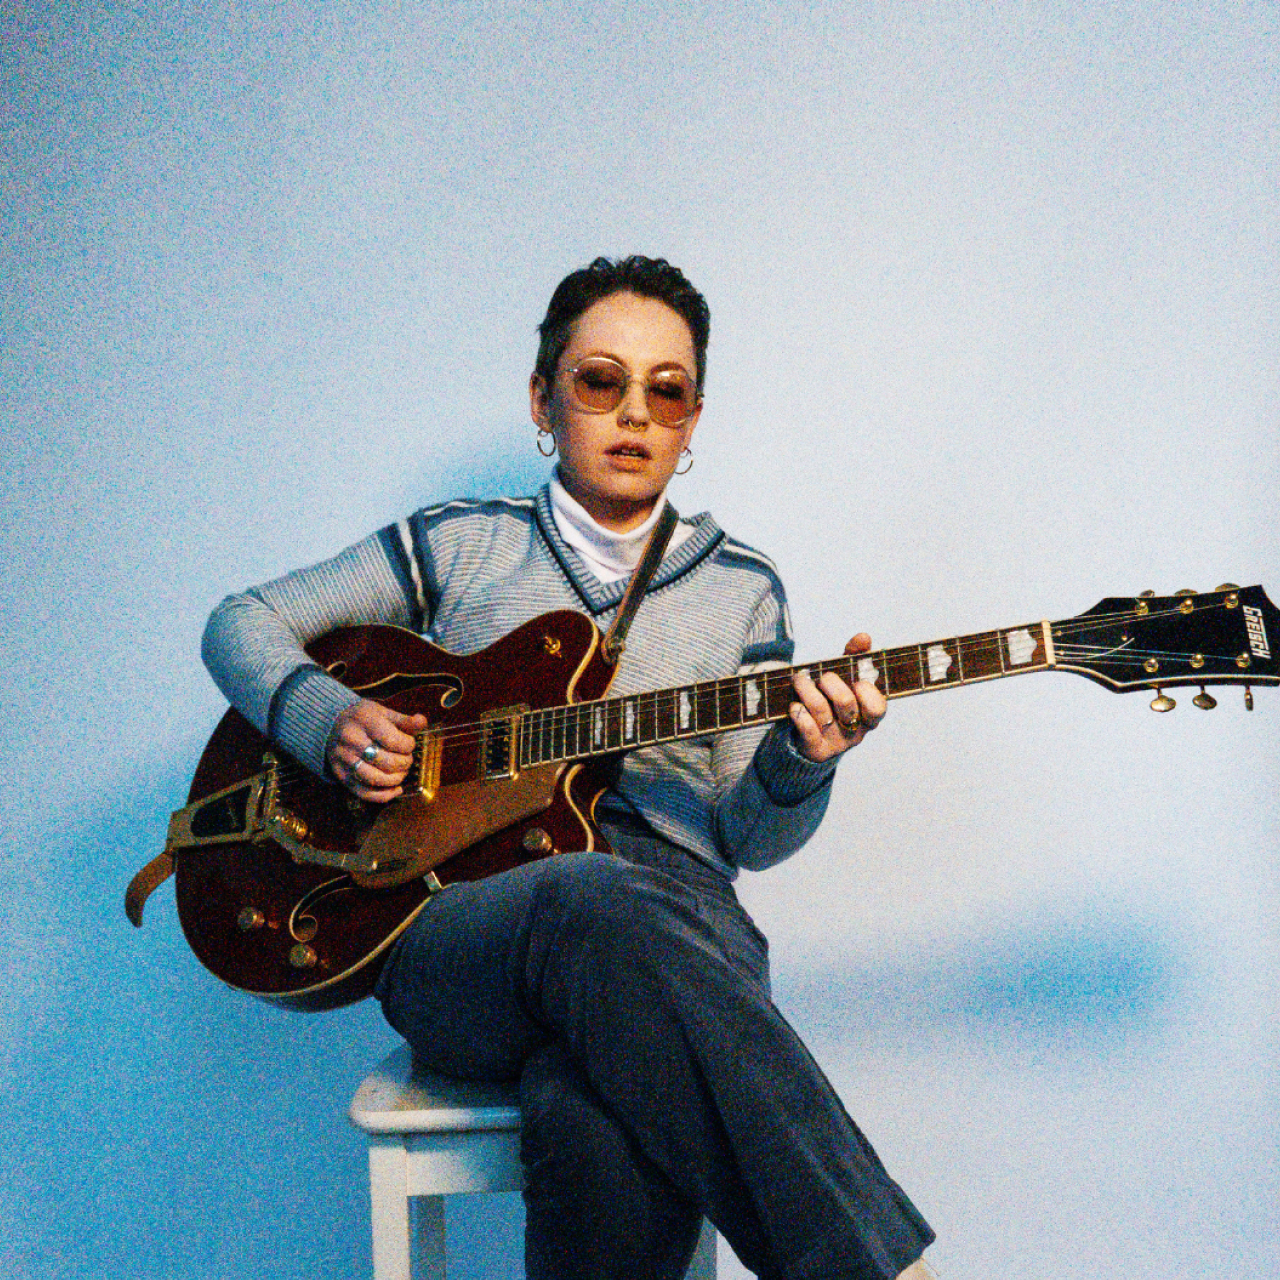 La artista Nia Wyn toca la guitarra en una silla